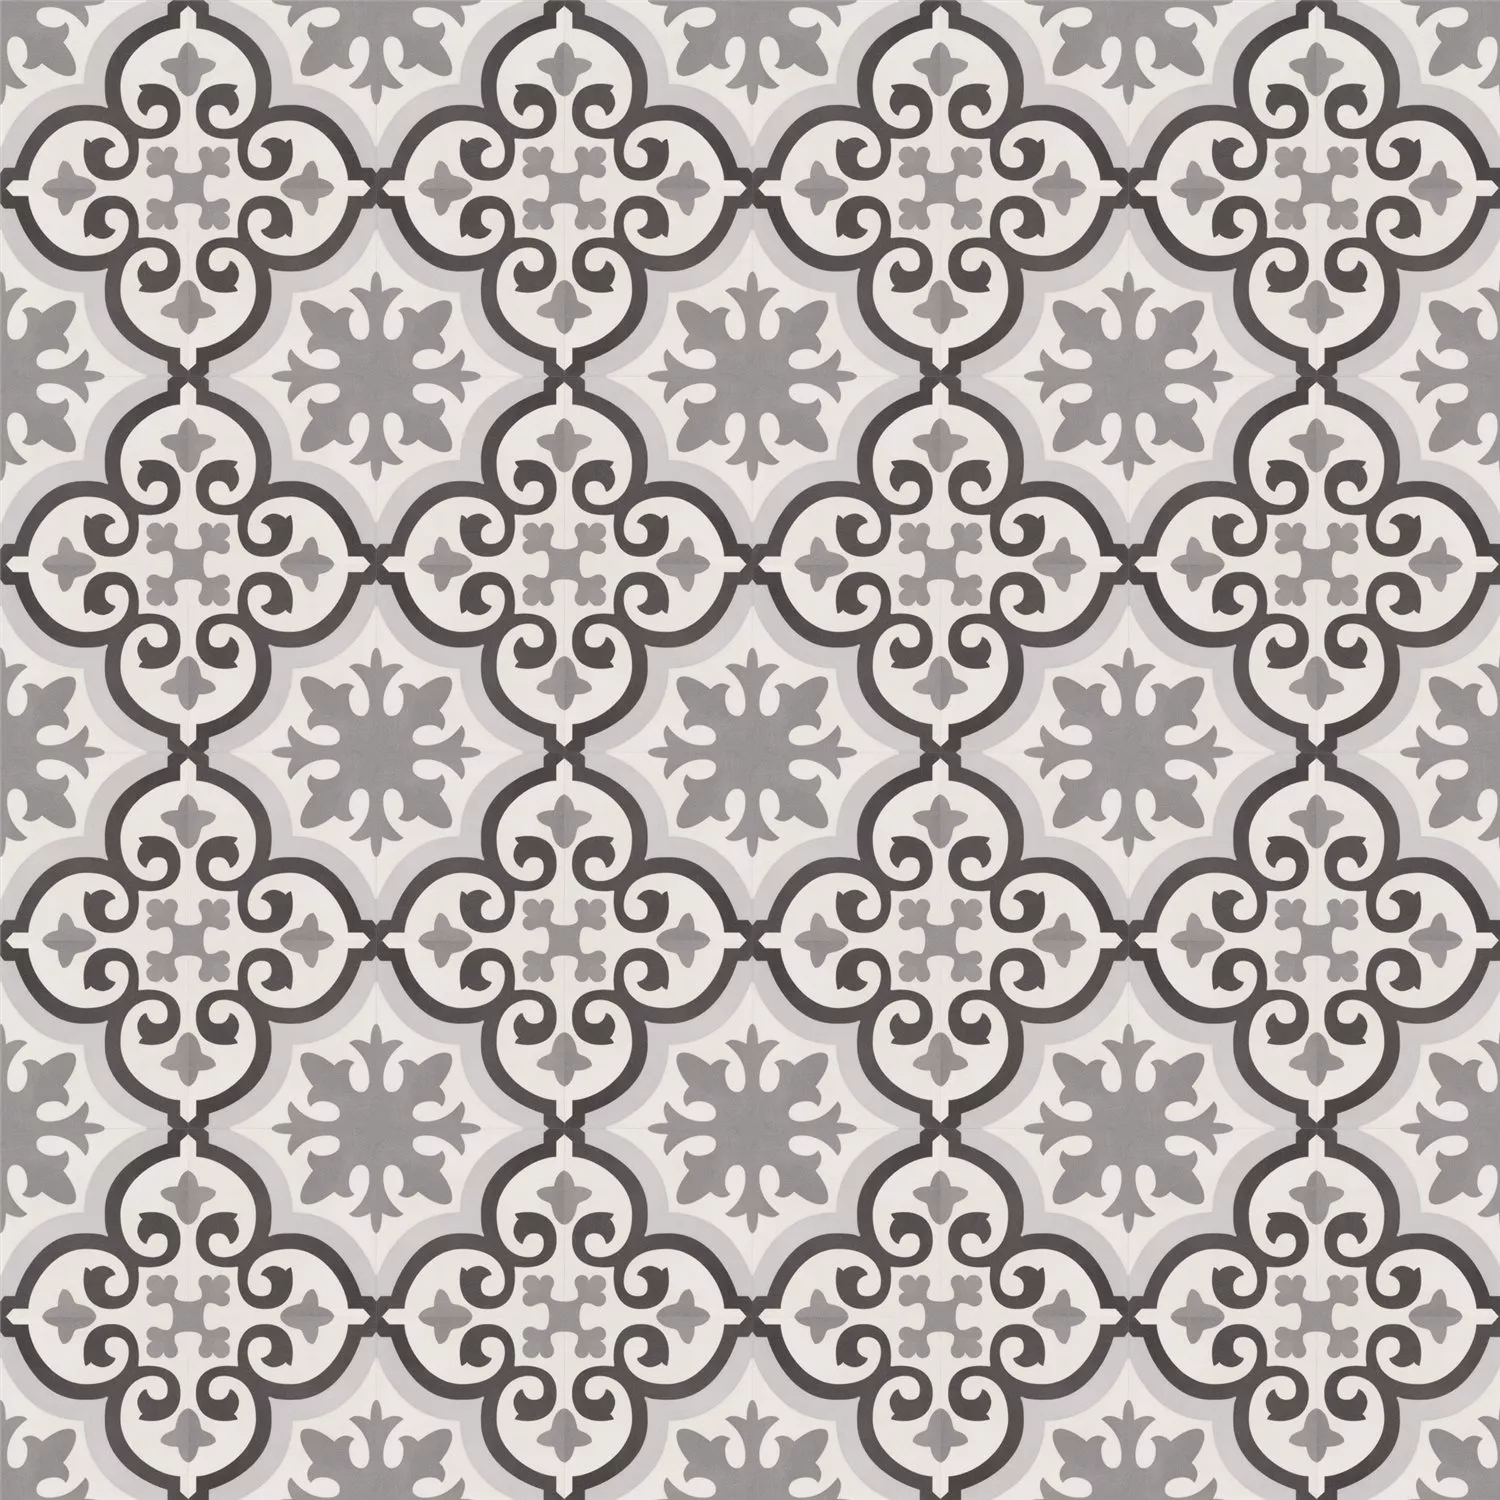 Sample Cement Tiles Optic Arena Floor Tiles Chalet 18,6x18,6cm